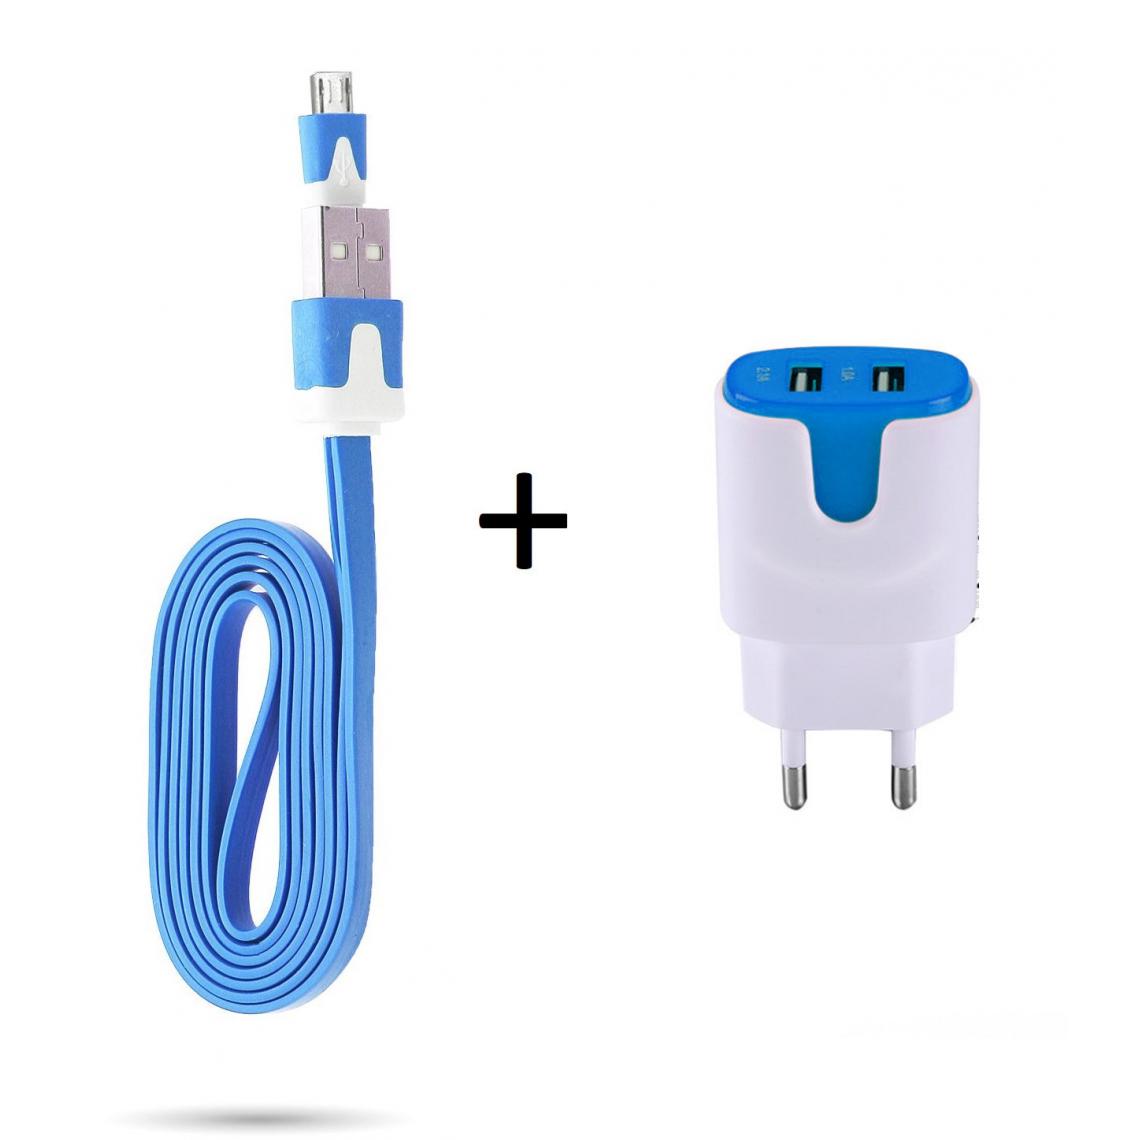 Shot - Pack Chargeur pour WIKO View 3 Smartphone Micro USB (Cable Noodle 1m Chargeur + Double Prise Secteur Couleur USB) (BLEU) - Chargeur secteur téléphone